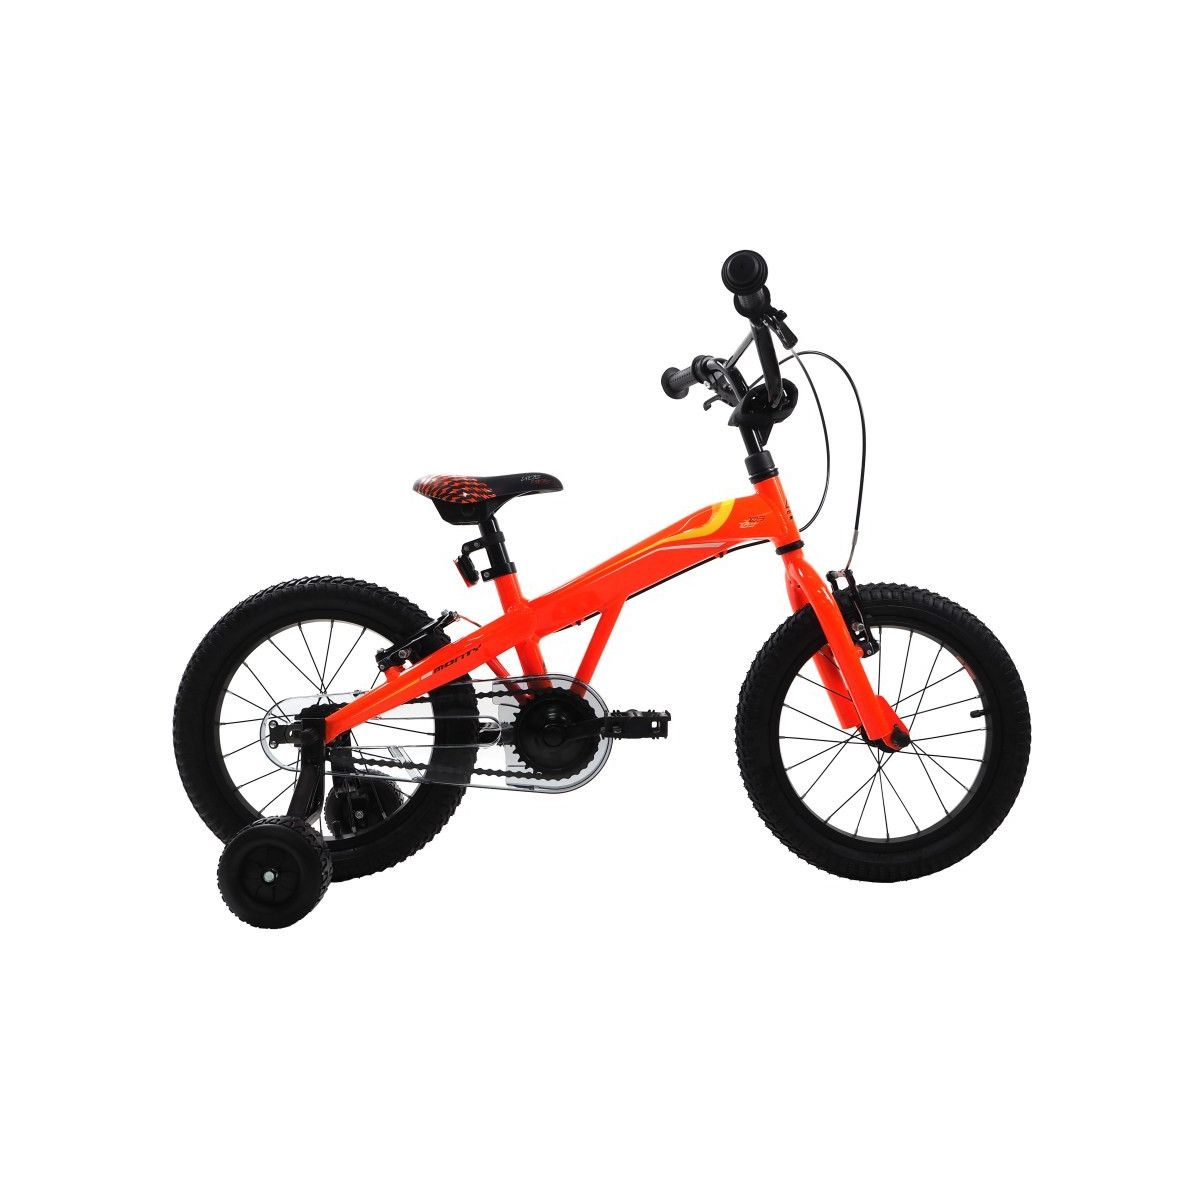 Bicicleta niño Monty 103 (3 a 5 años) 2018